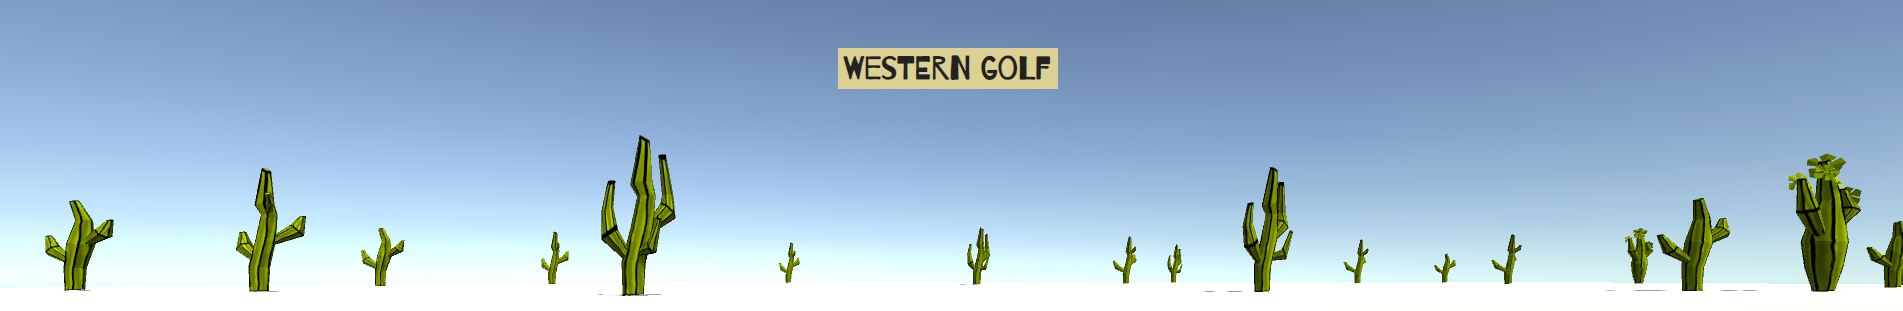 Western Golf